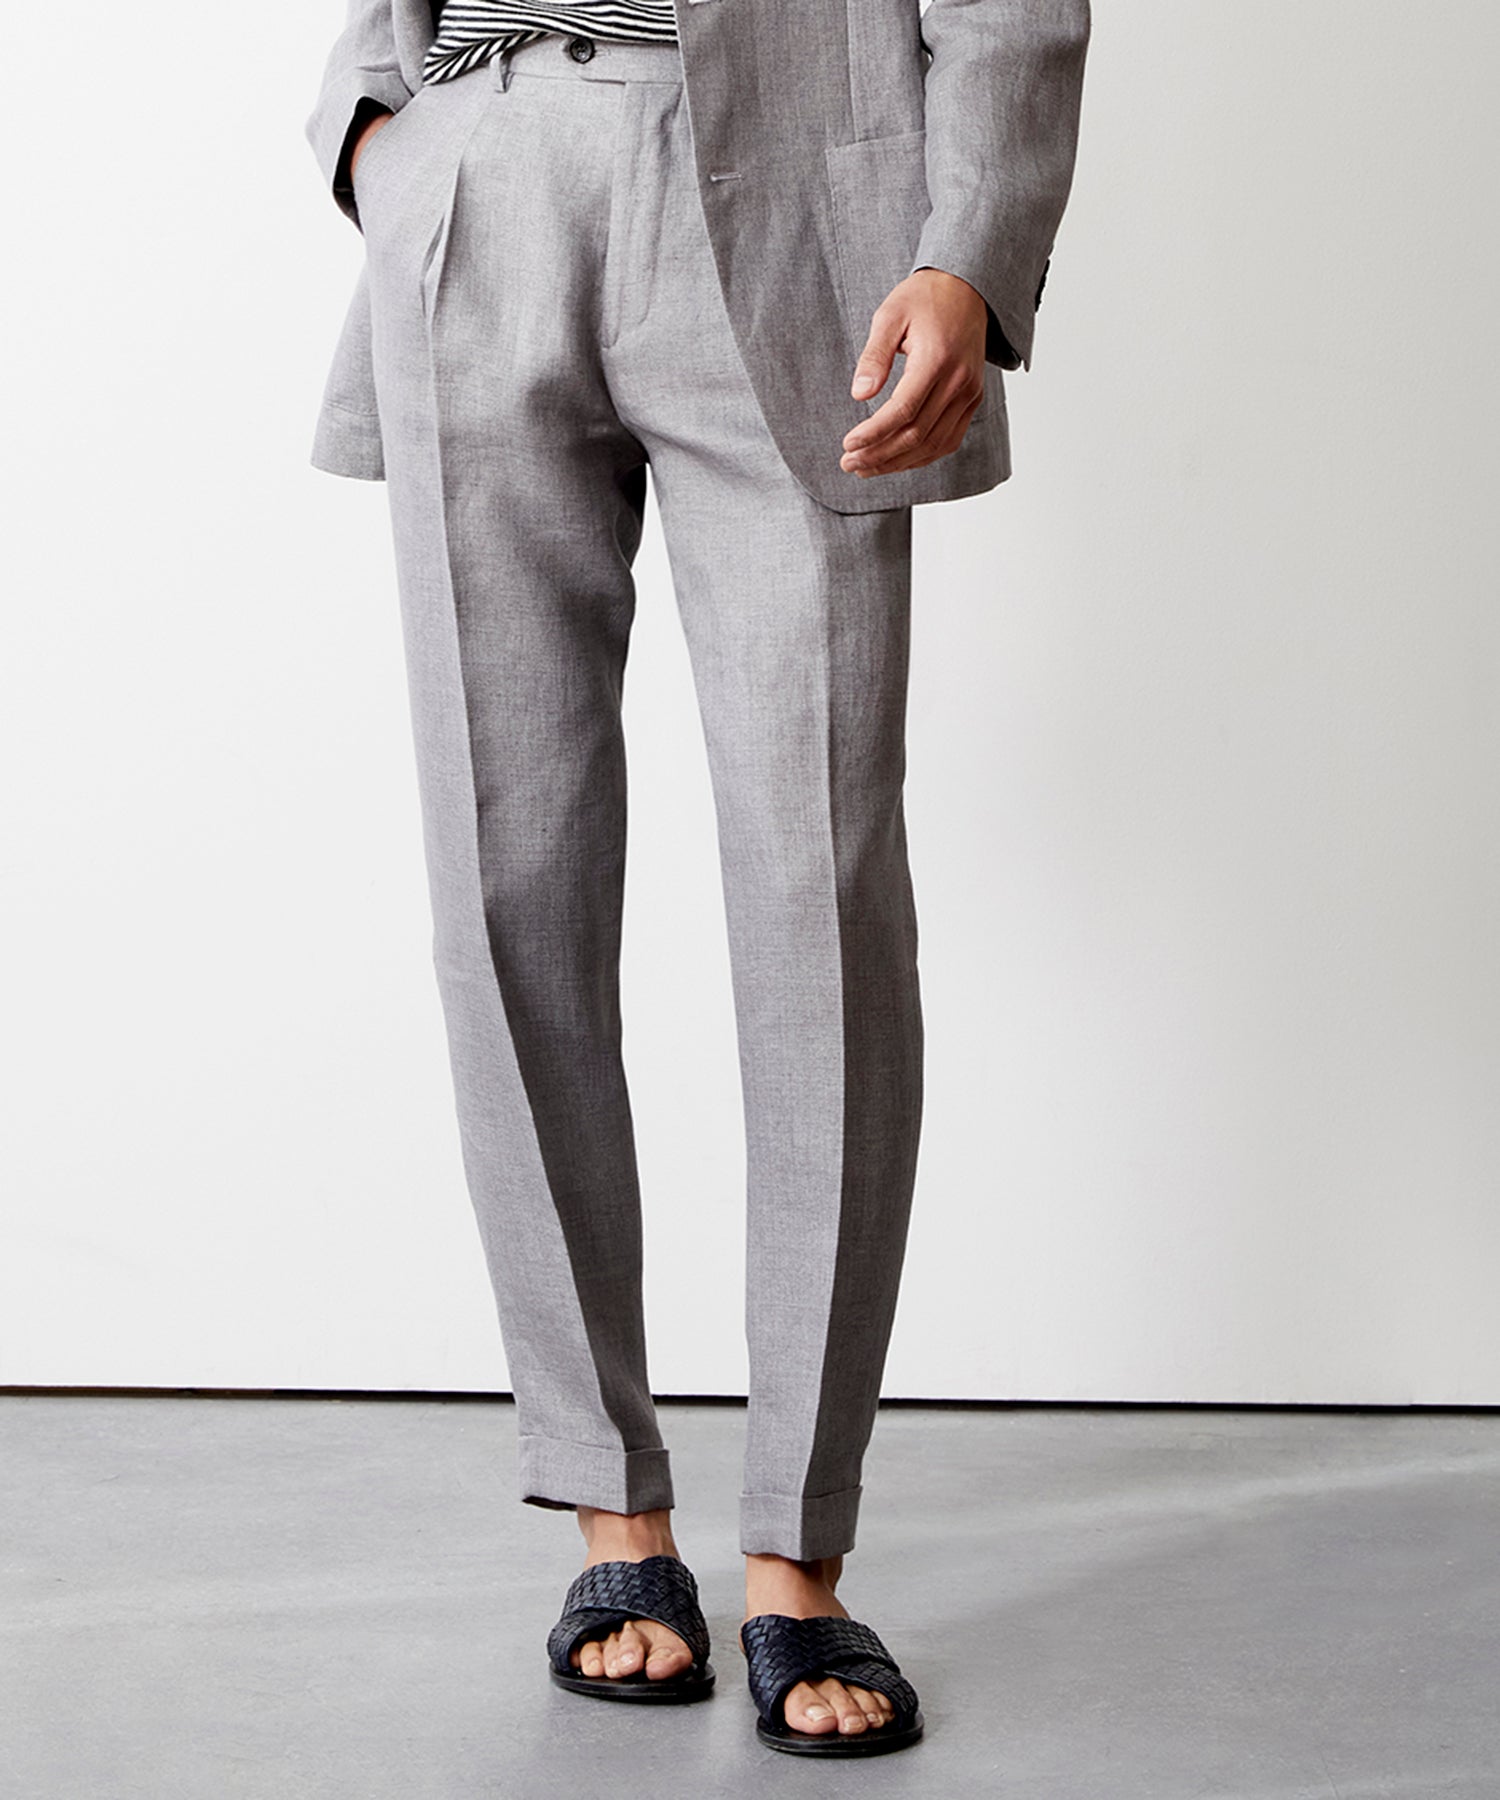 Italian Linen Madison Trouser in Light Grey Herringbone